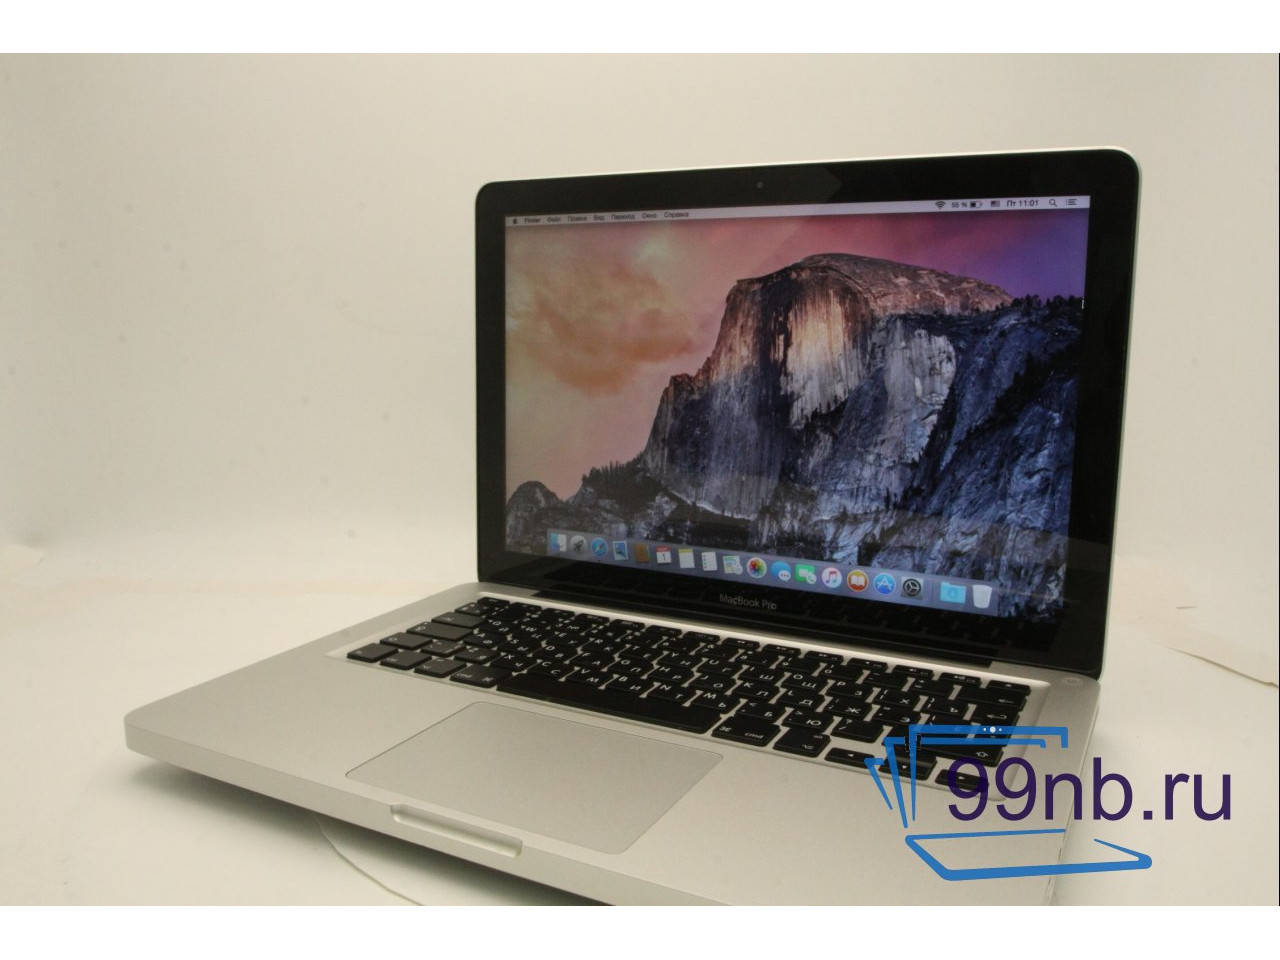 Macbook MacBook Pro (13-inch, Mid 2012